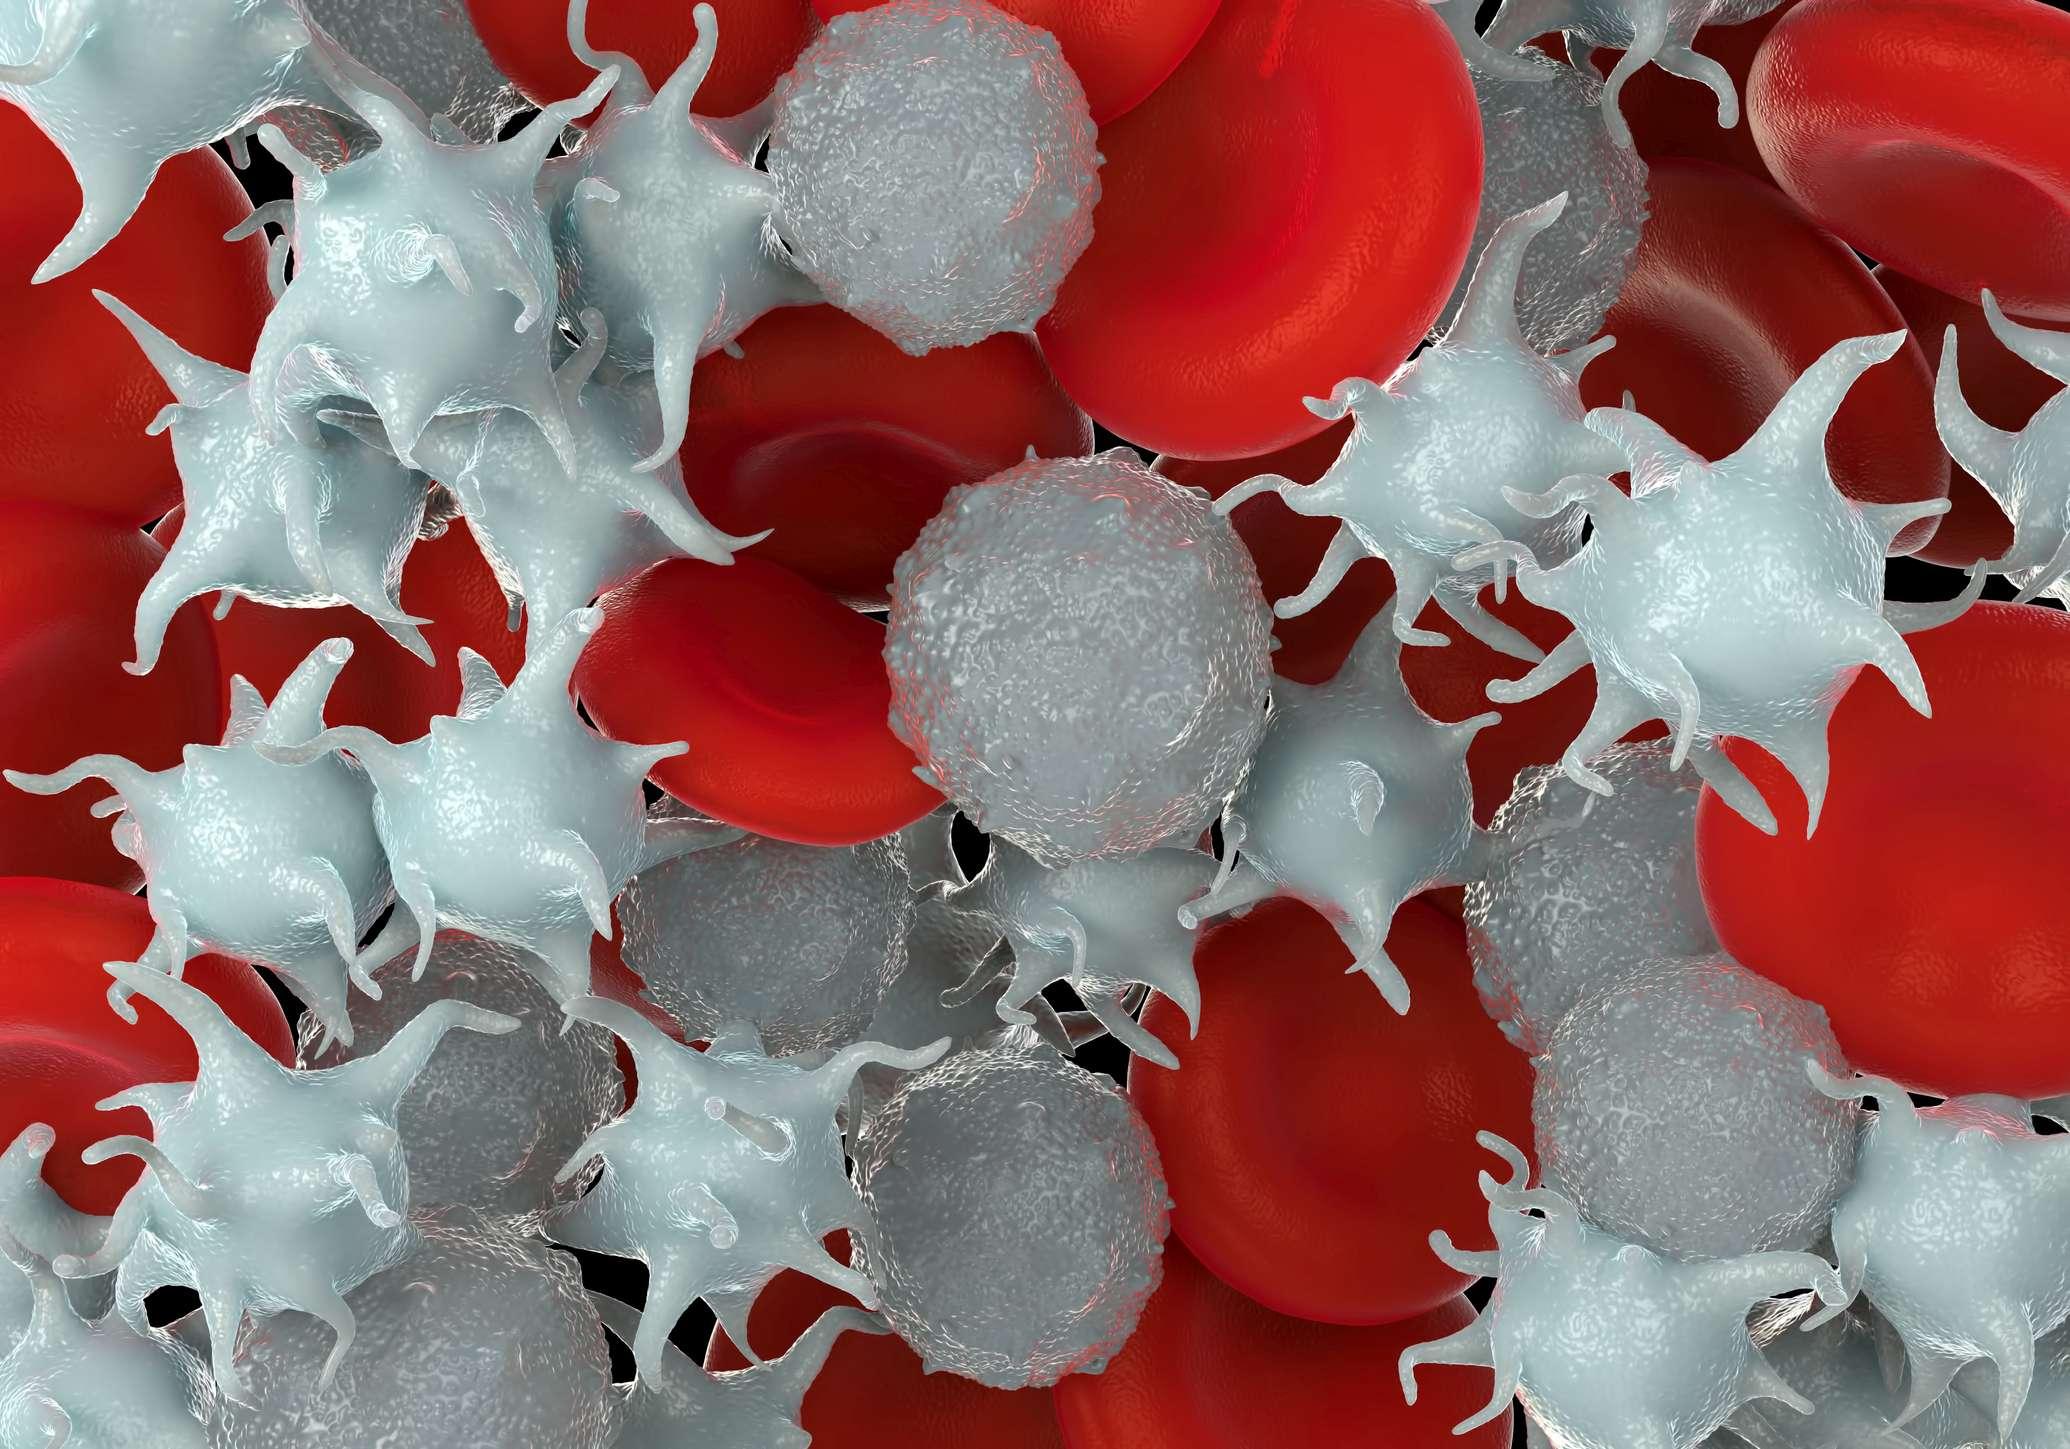 Mikroskopische Fotos von roten Blutkörperchen, aktivierten Blutplättchen und weißen Blutkörperchen